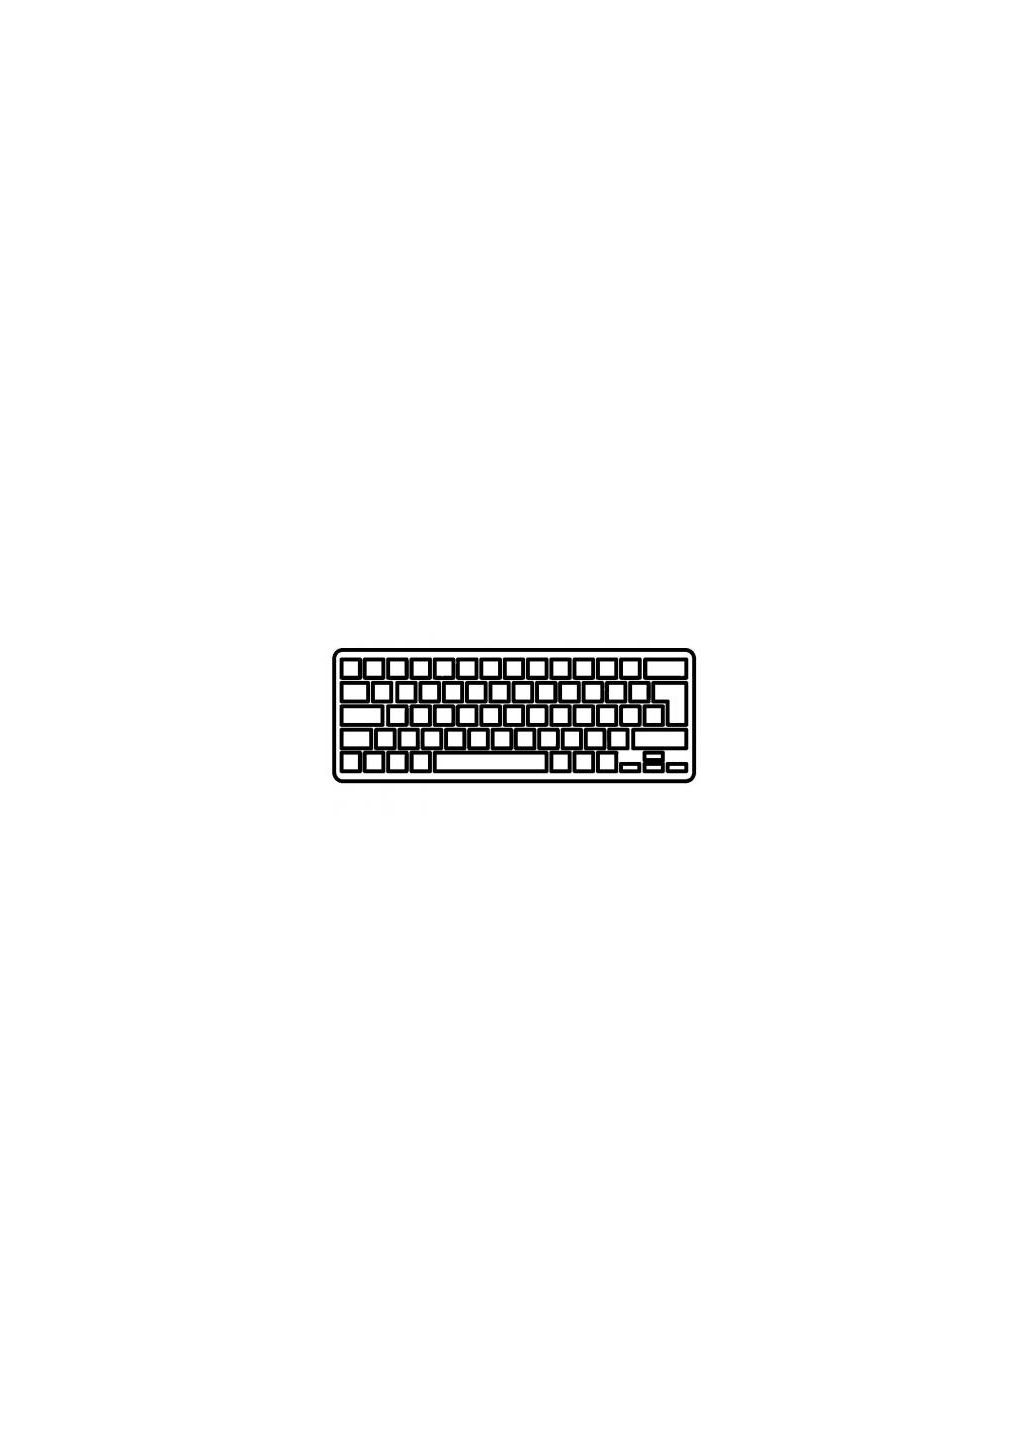 Клавиатура ноутбука Aspire V5531/V5-551/V5-571 черная без рамки UA (A43578) Acer aspire v5-531/v5-551/v5-571 черная без рамки ua (276707562)